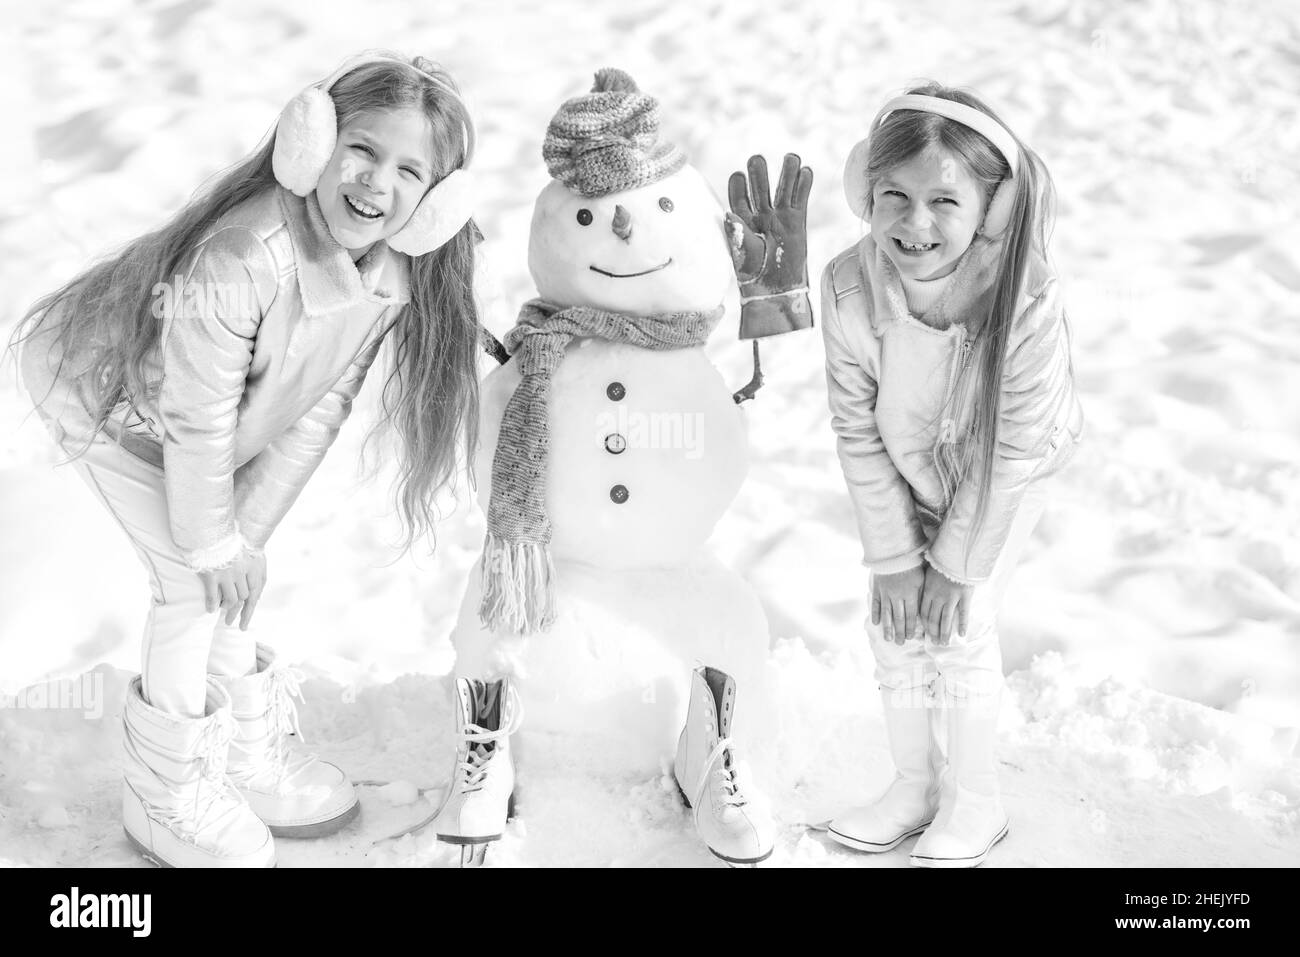 Celebración Del Año Nuevo. Niña Feliz Con Nieve Que Cae. Mujer Joven  Vestida Con Un Suéter Blanco Cálido Y Calcetines Blancos. Vacaciones De  Invierno En Día De Nieve Fotos, retratos, imágenes y